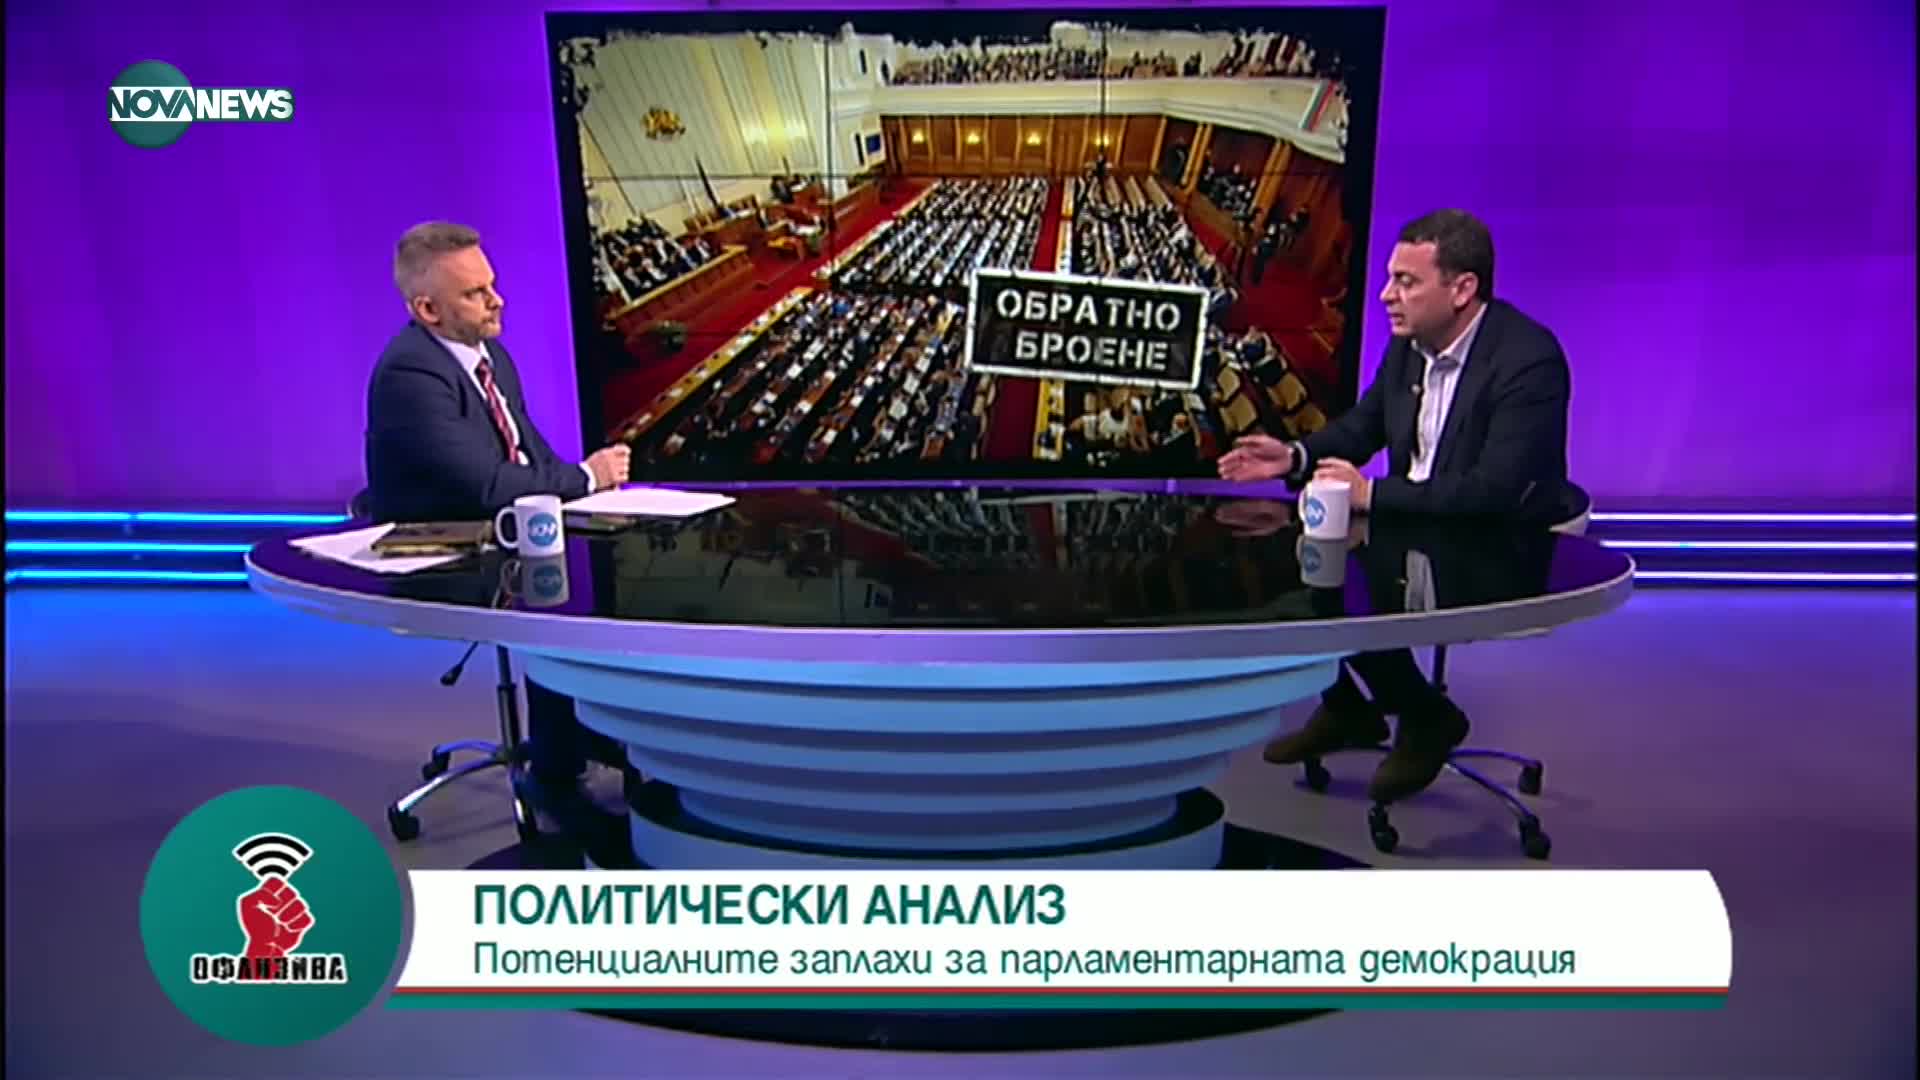 Ченчев: Не сме търсили коалиция, а разговор как да се излезе от кризата